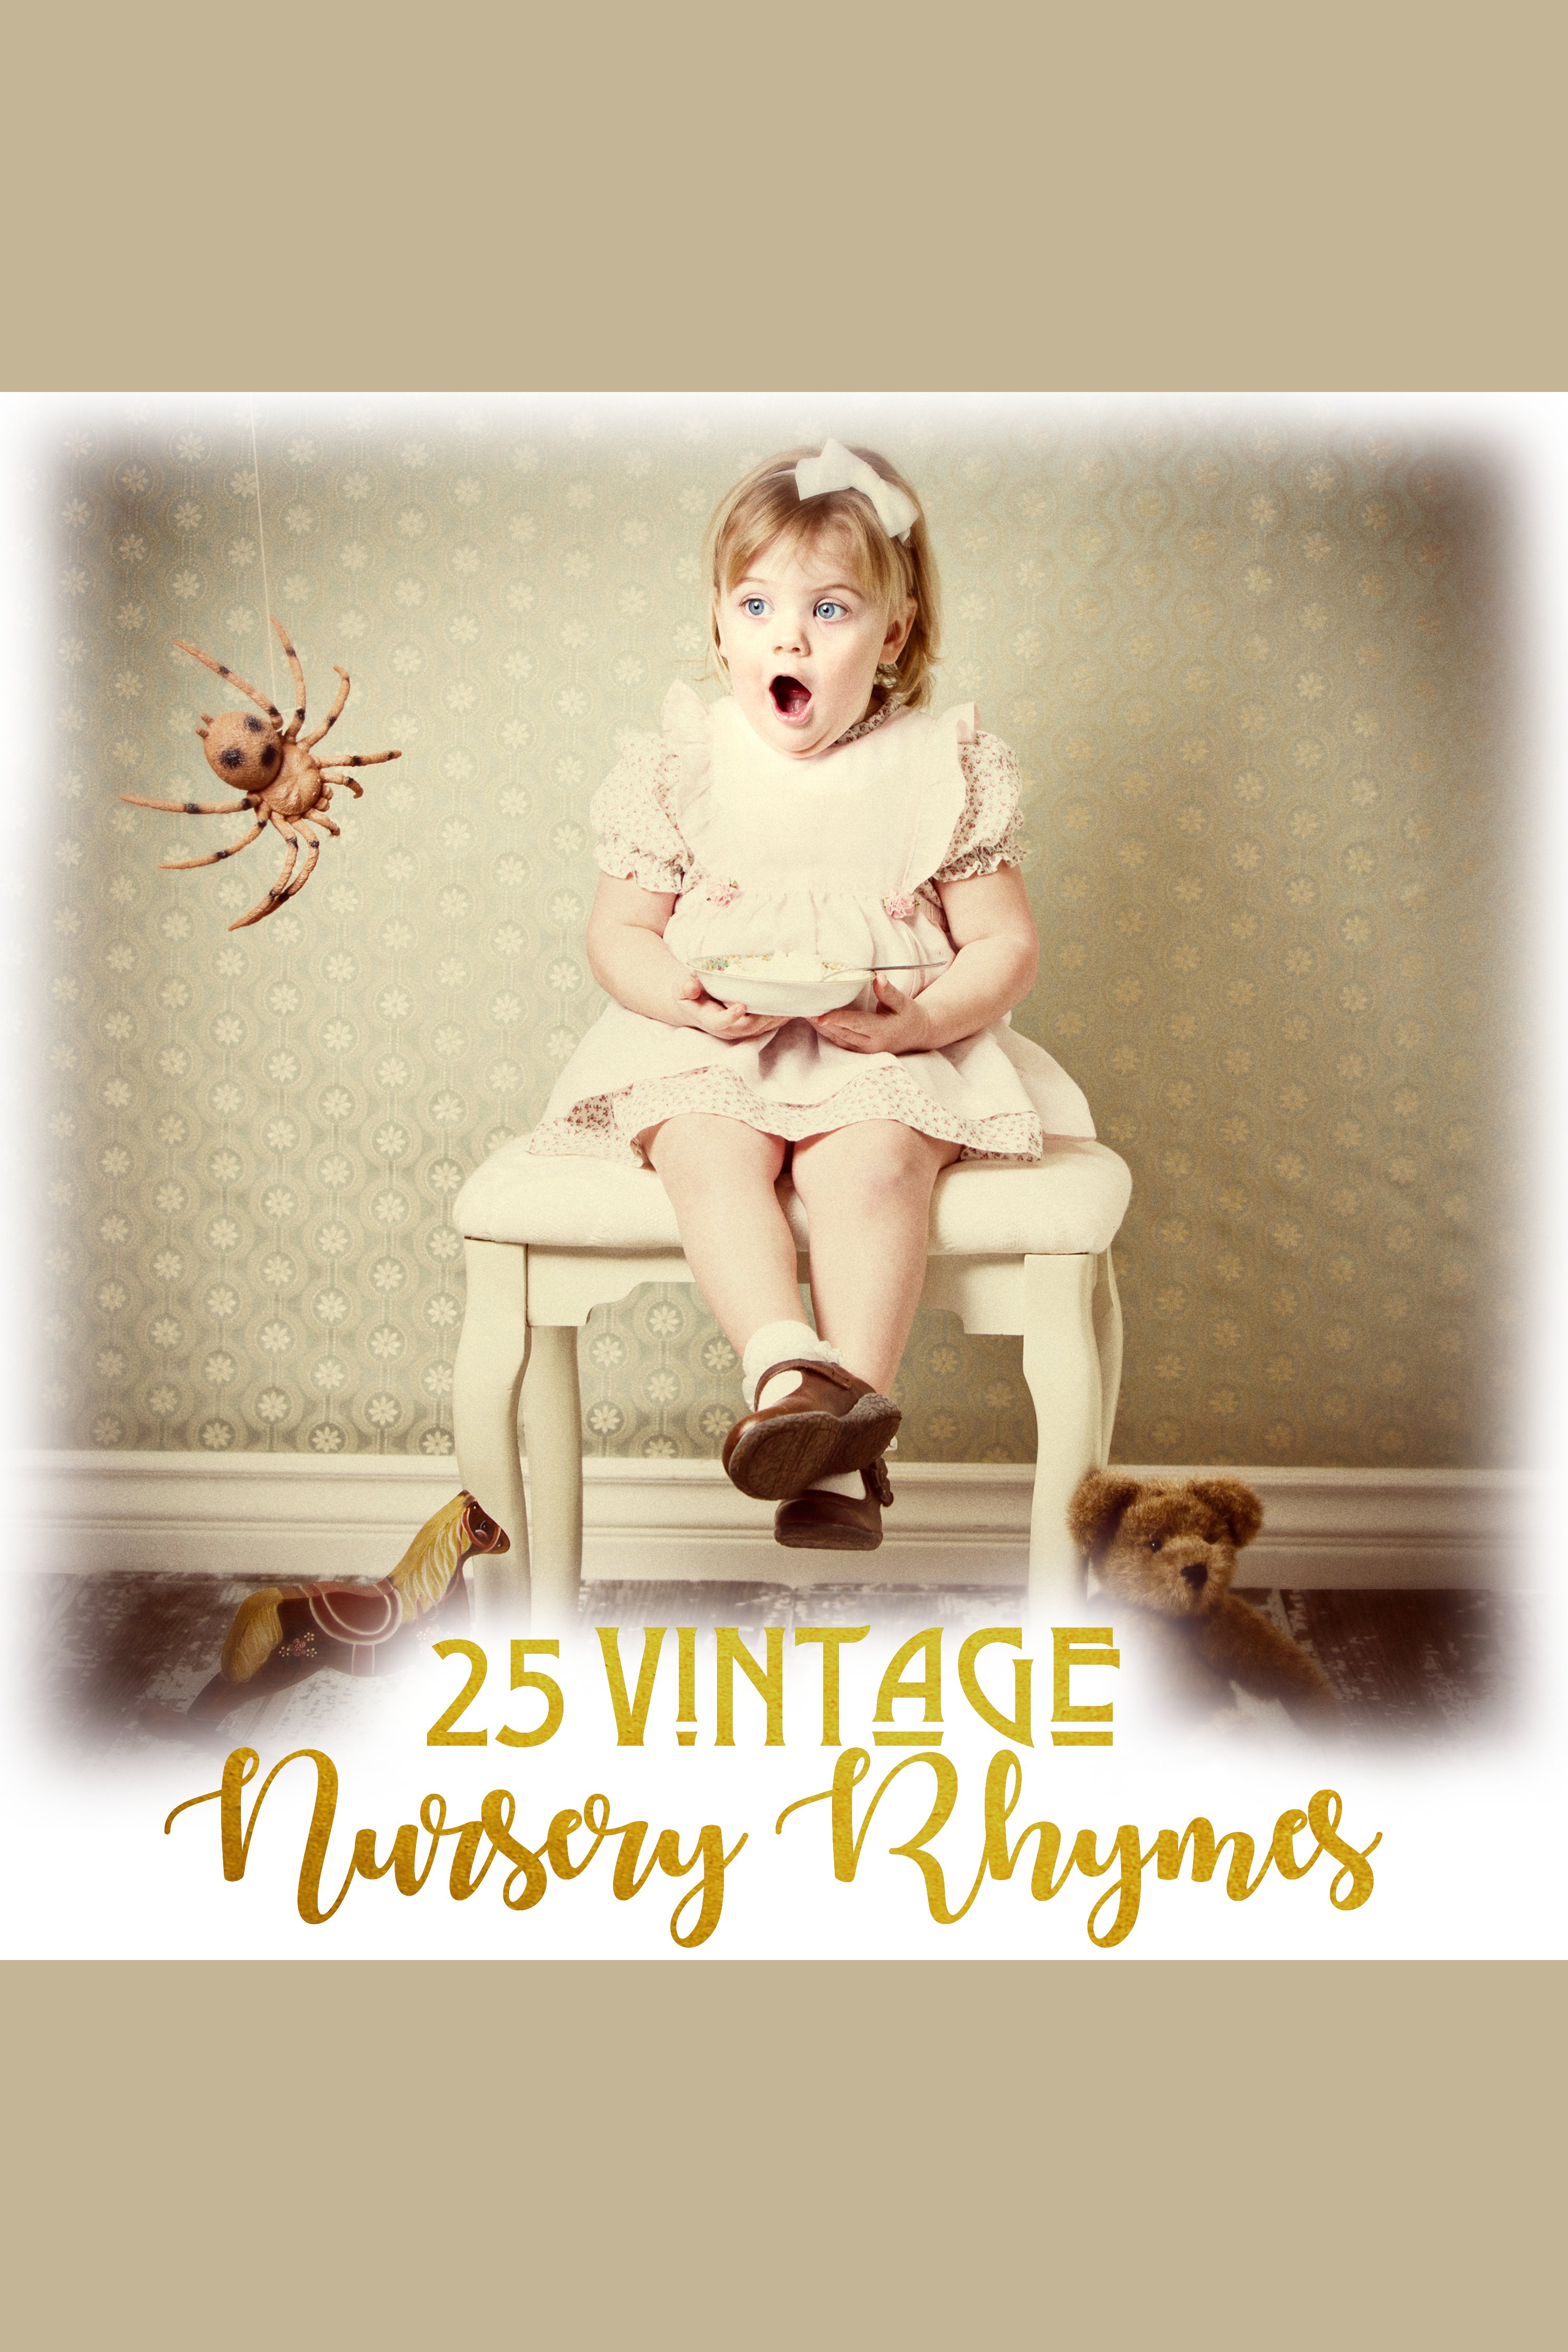 Vintage Nursery Rhymes cover image